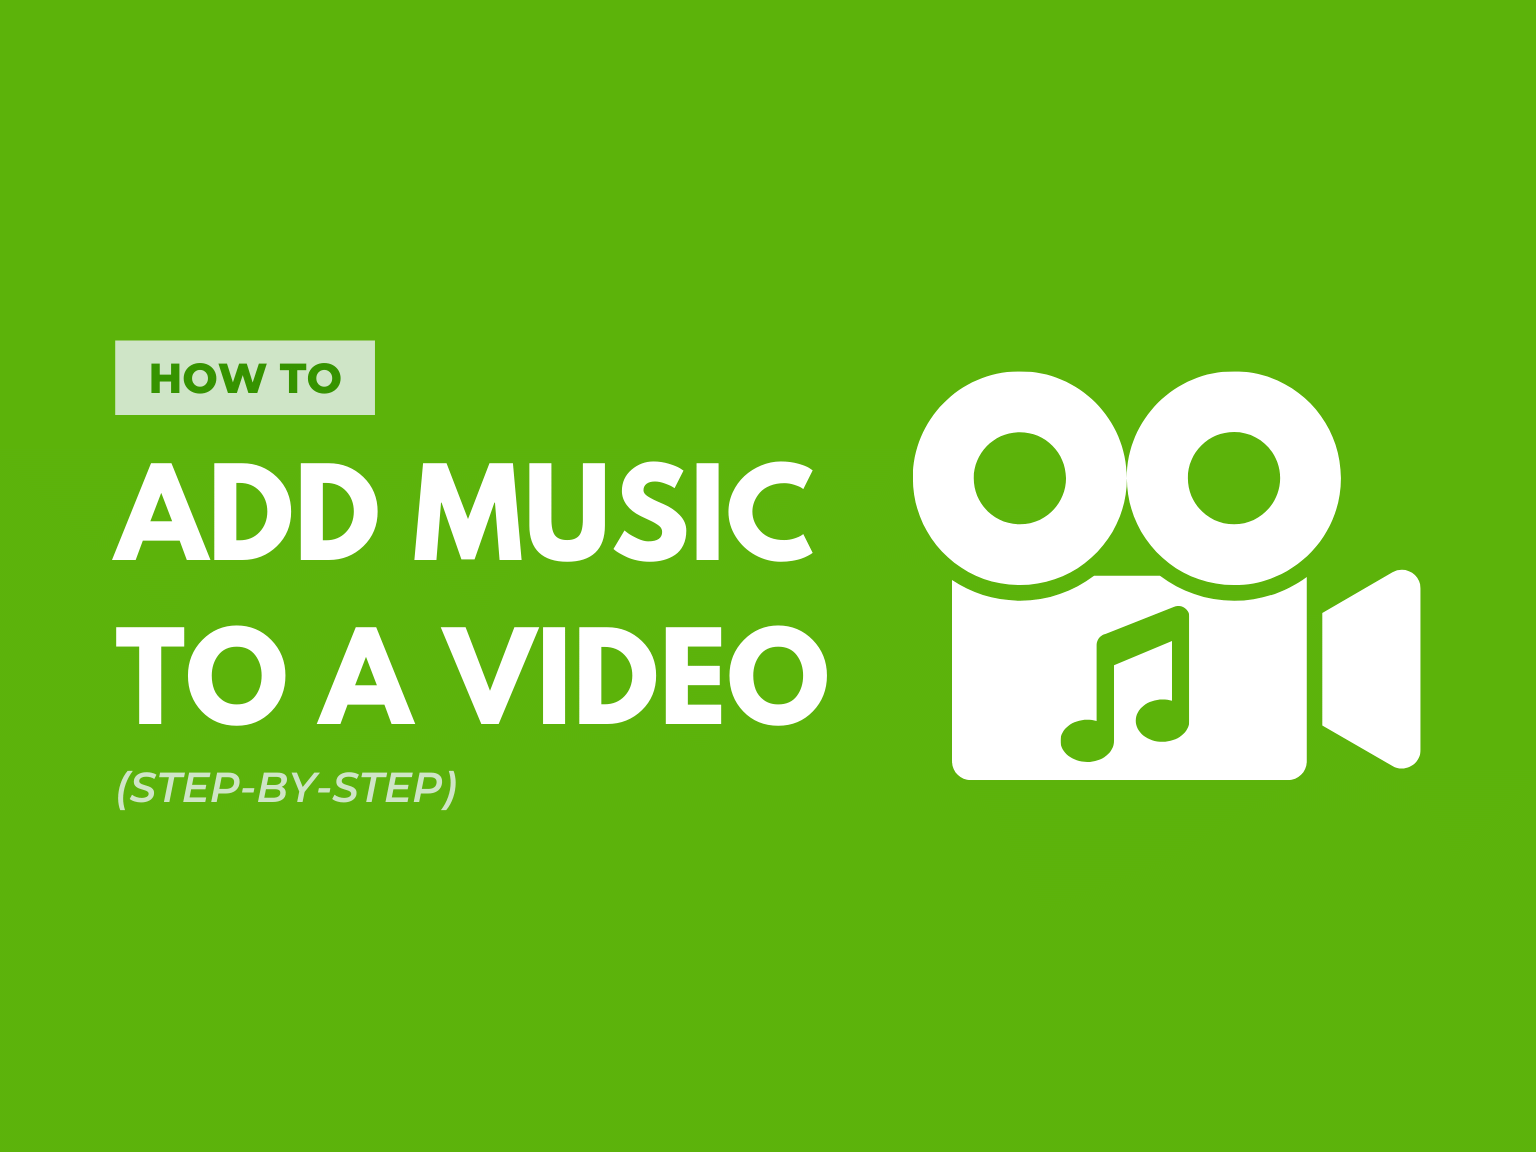 Bạn có muốn biến những đoạn video vui nhộn của mình thành hấp dẫn hơn bằng một vài nhạc nền đặc sắc không? Hãy tìm hiểu cách thêm nhạc vào video chỉ với vài thao tác đơn giản mà không cần phải là chuyên gia chỉnh sửa video.